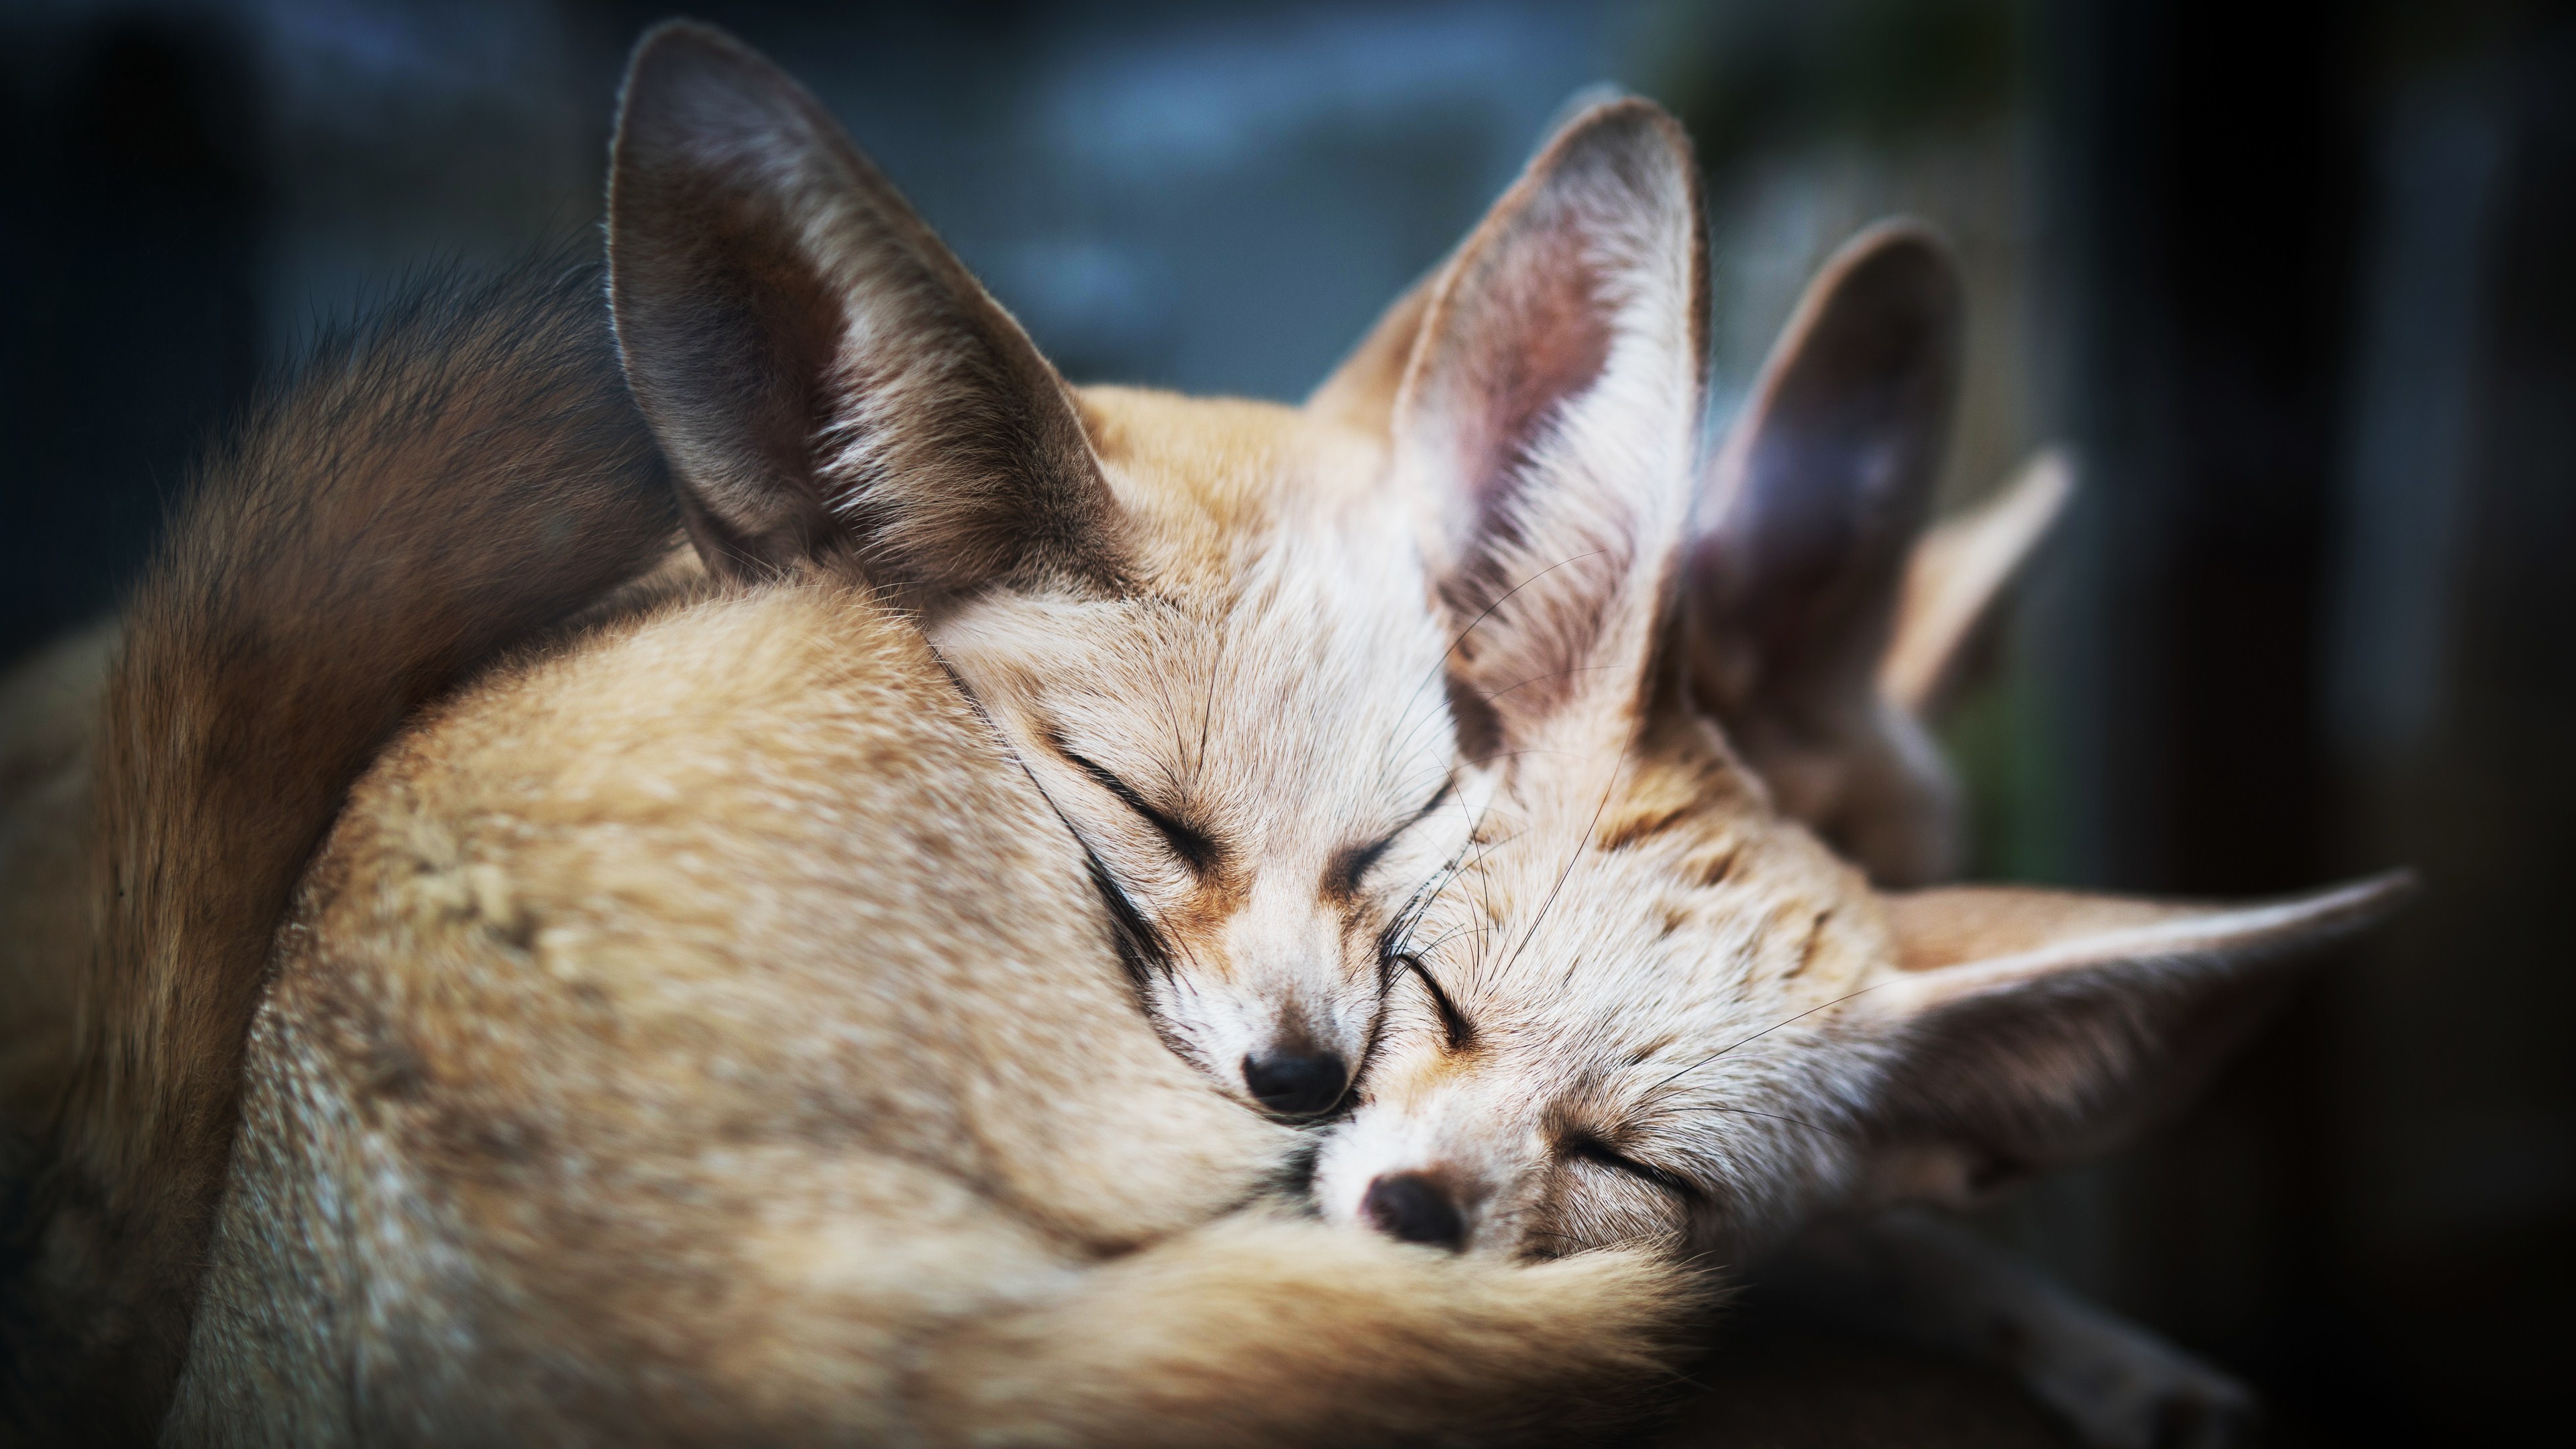 Fennec Fox, Sleeping fox, HD 4K wallpapers, Relaxing fennec, 3840x2160 4K Desktop